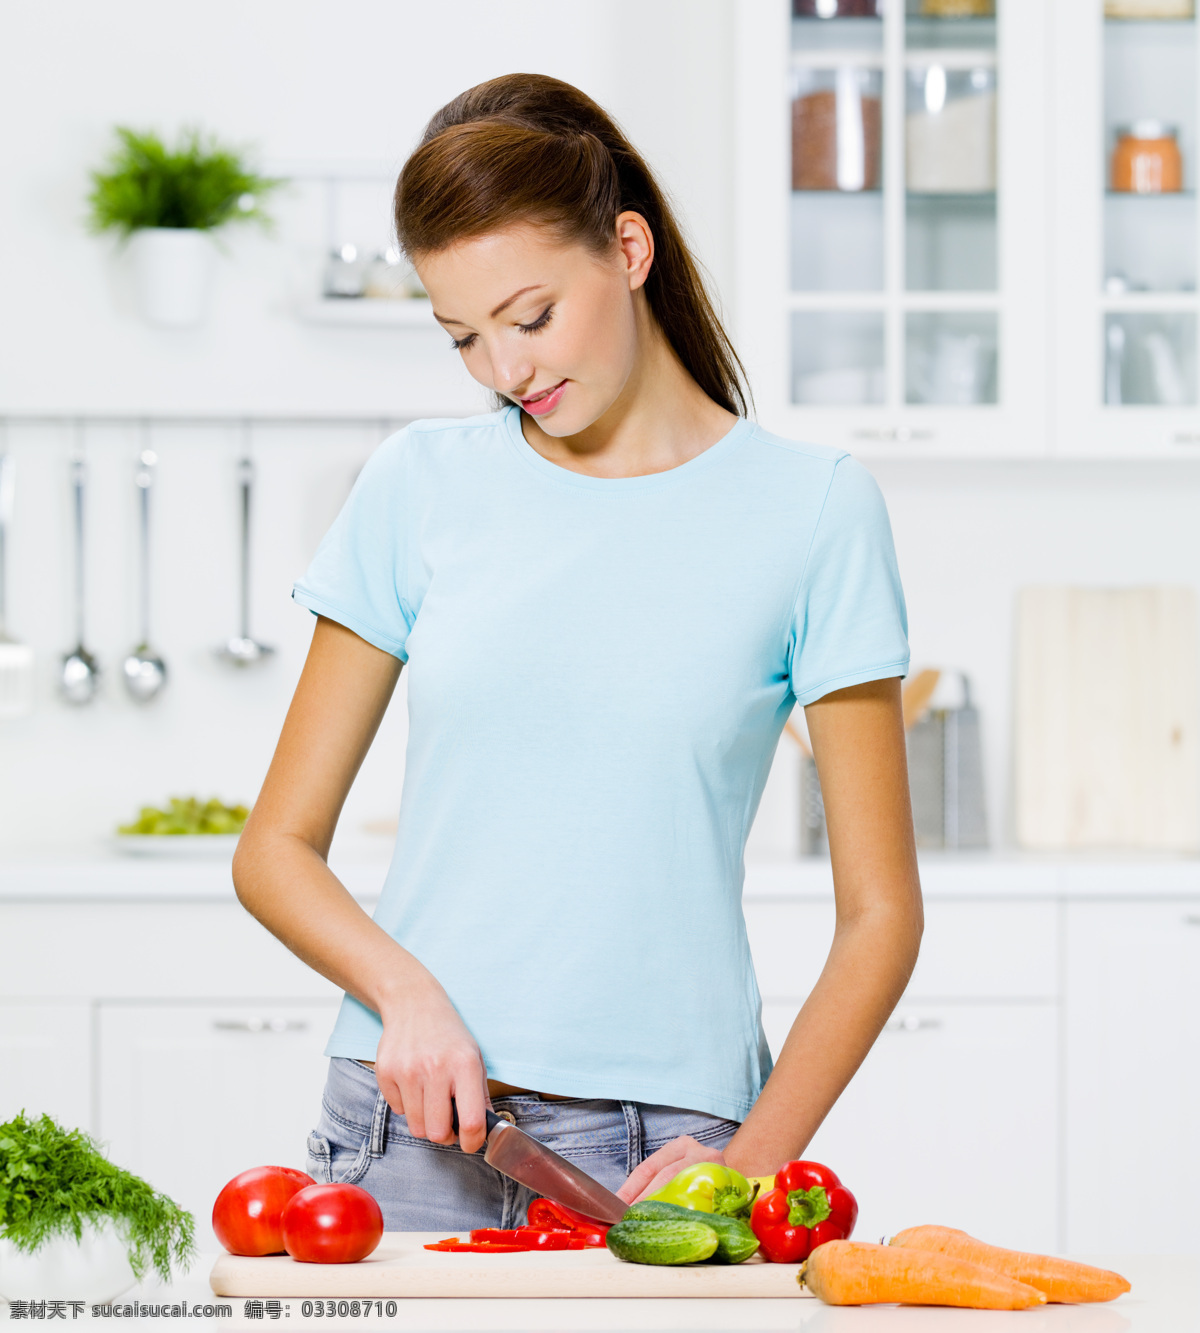 切 菜 美女图片 外国女性 女人 厨房 做菜 切菜 蔬菜 蕃茄 西红柿 黄瓜 胡萝卜 生活人物 人物图片